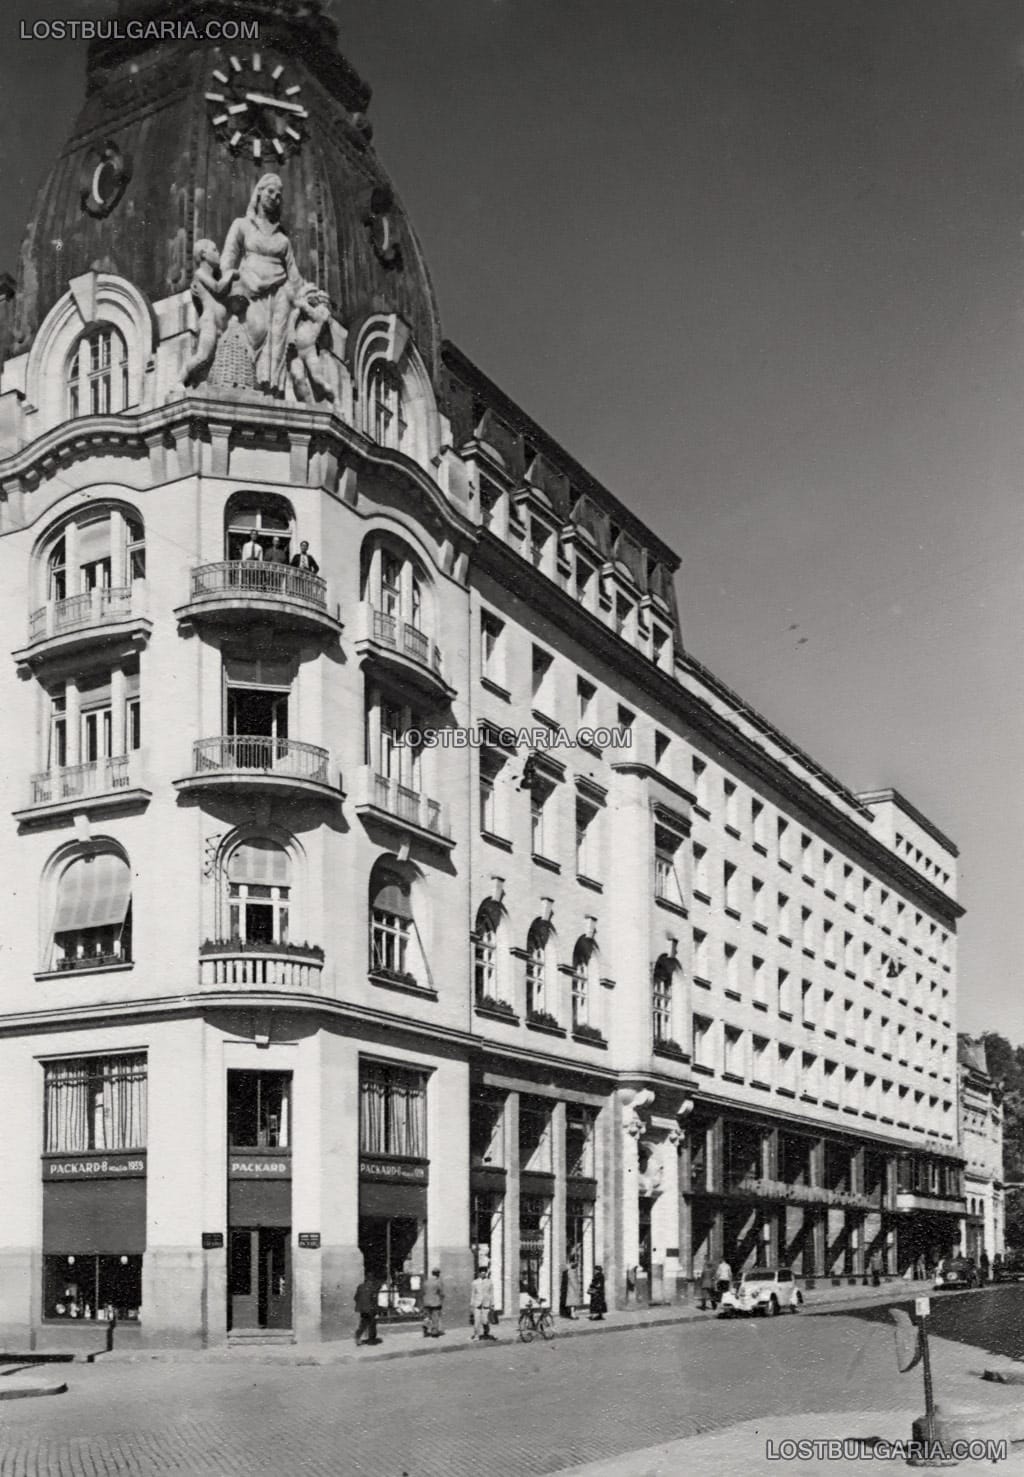 София, сградата на "Гранд хотел България" на бул. "Цар Освободител", с представителството на автомобилната компания Пакард, 30-те години на ХХ век